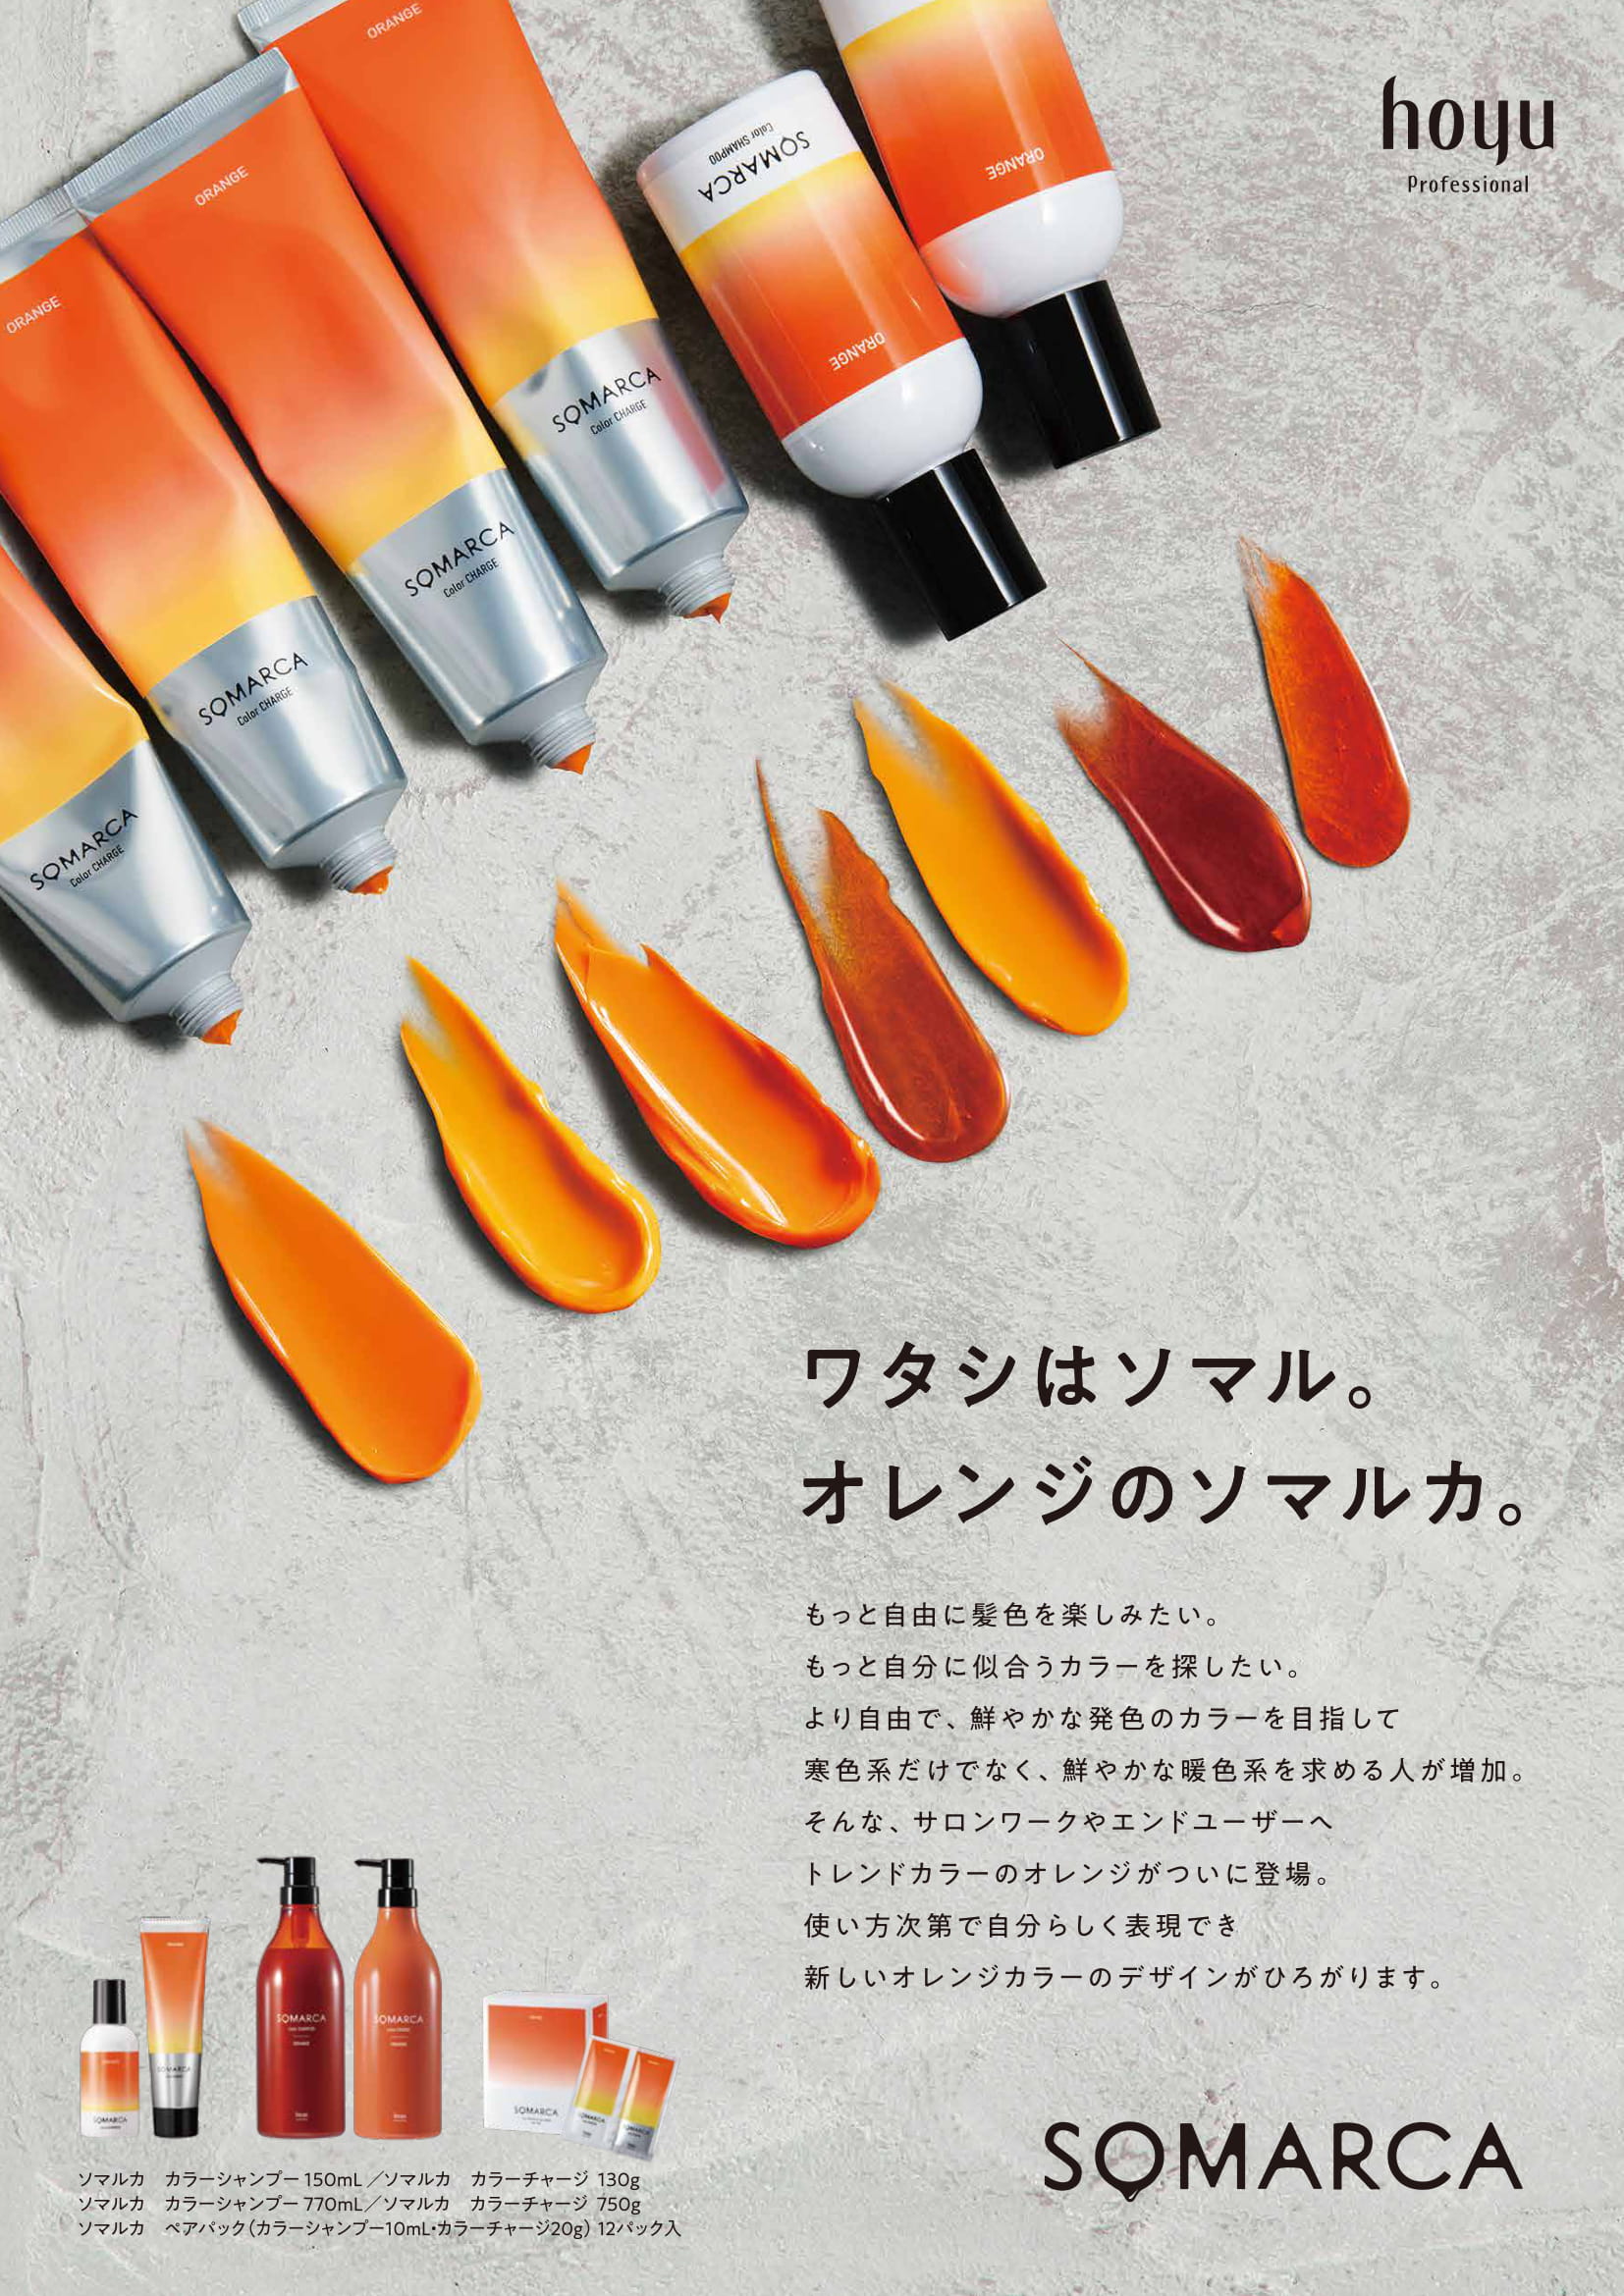 ホーユー SOMARCA(ソマルカ) カラーチャージ オレンジ 750gの業務用通販サイト【b-zone】